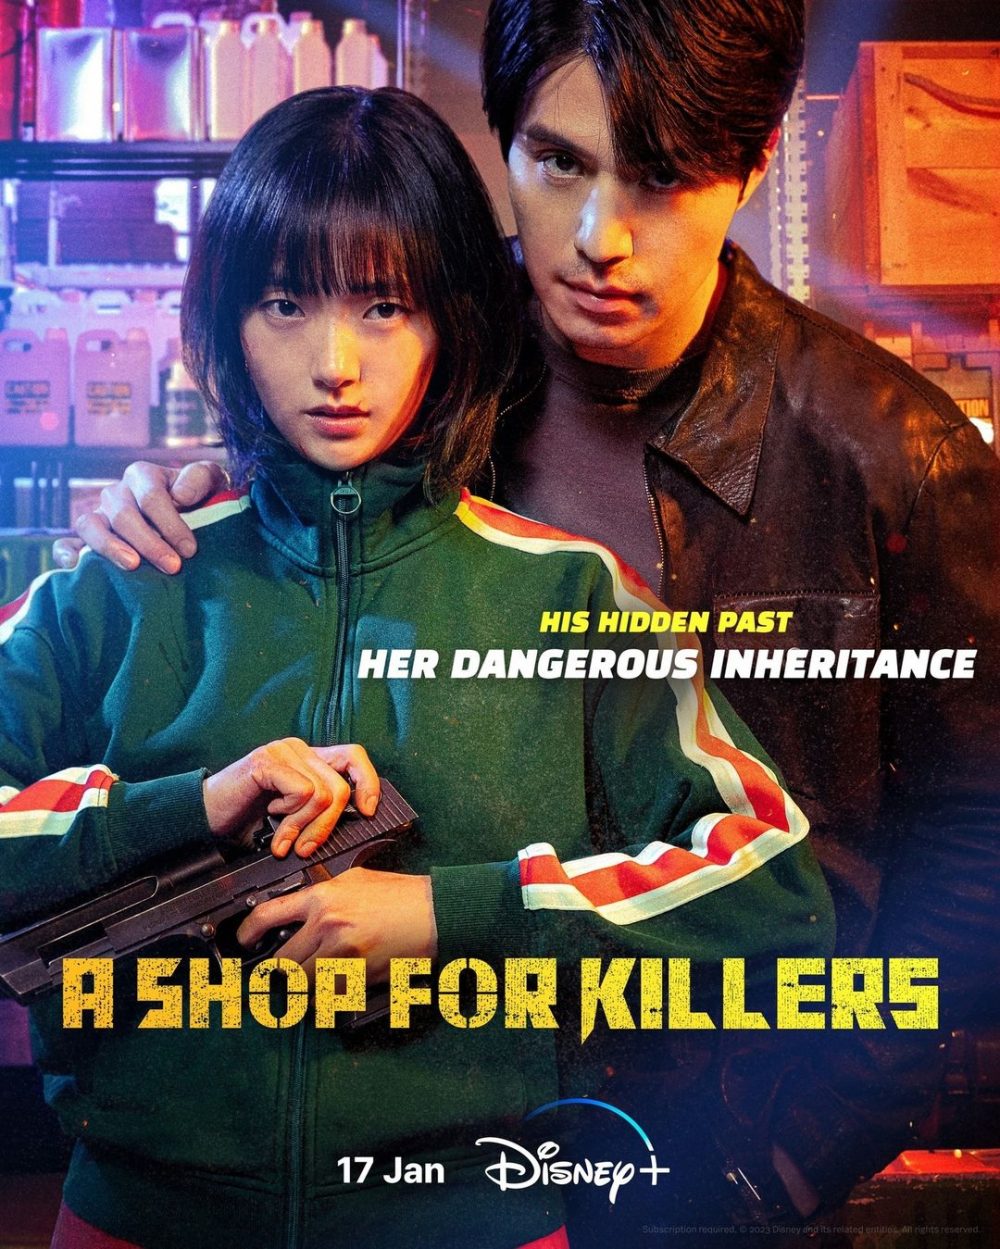 Cửa hàng sát thủ (A Shop for Killers)